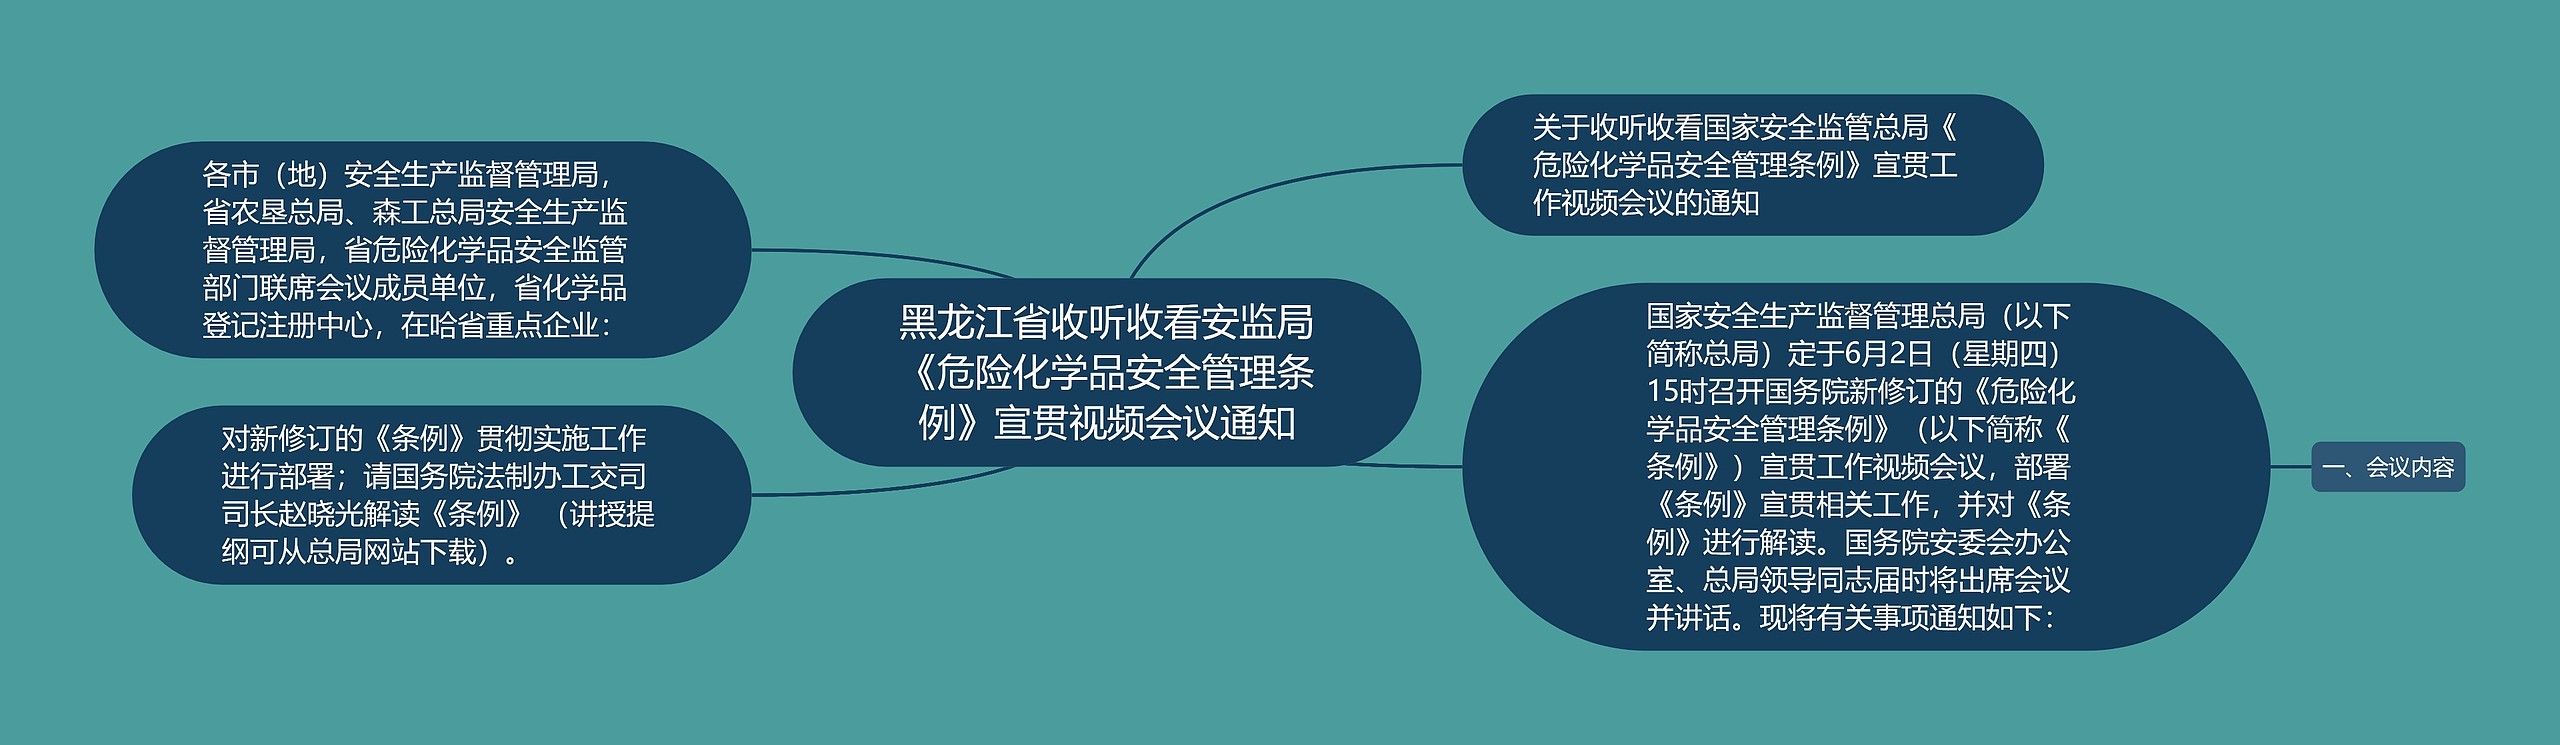 黑龙江省收听收看安监局《危险化学品安全管理条例》宣贯视频会议通知